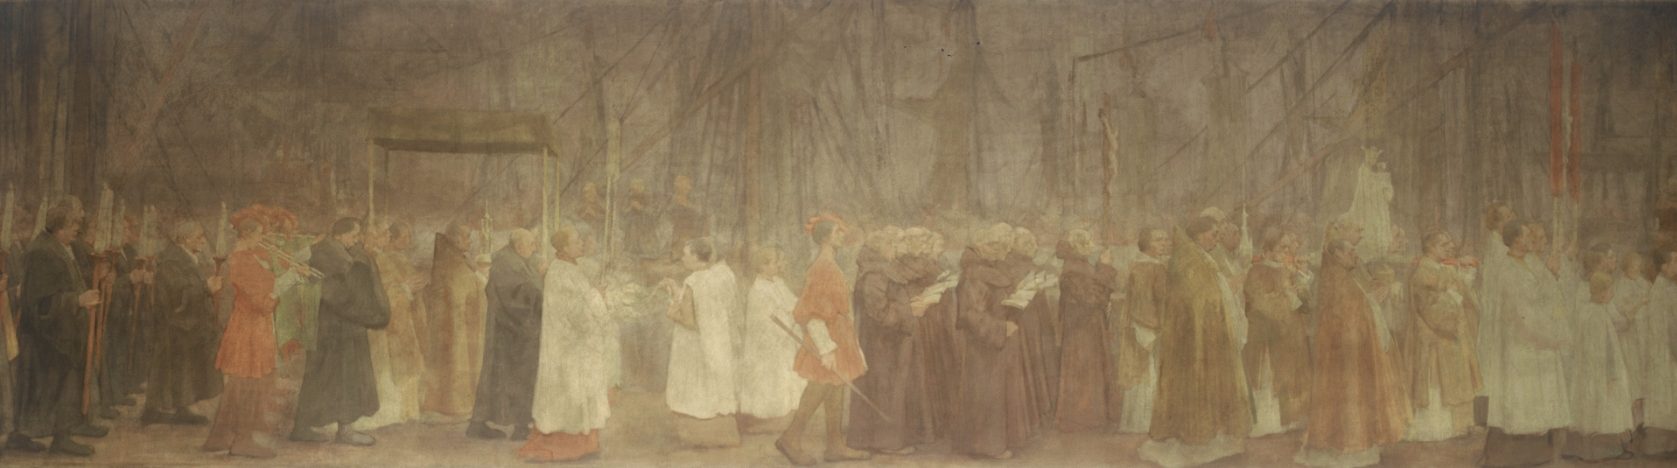 De processie, afgebeeld door Antoon Derkinderen, te zien in de Begijnhofkapel